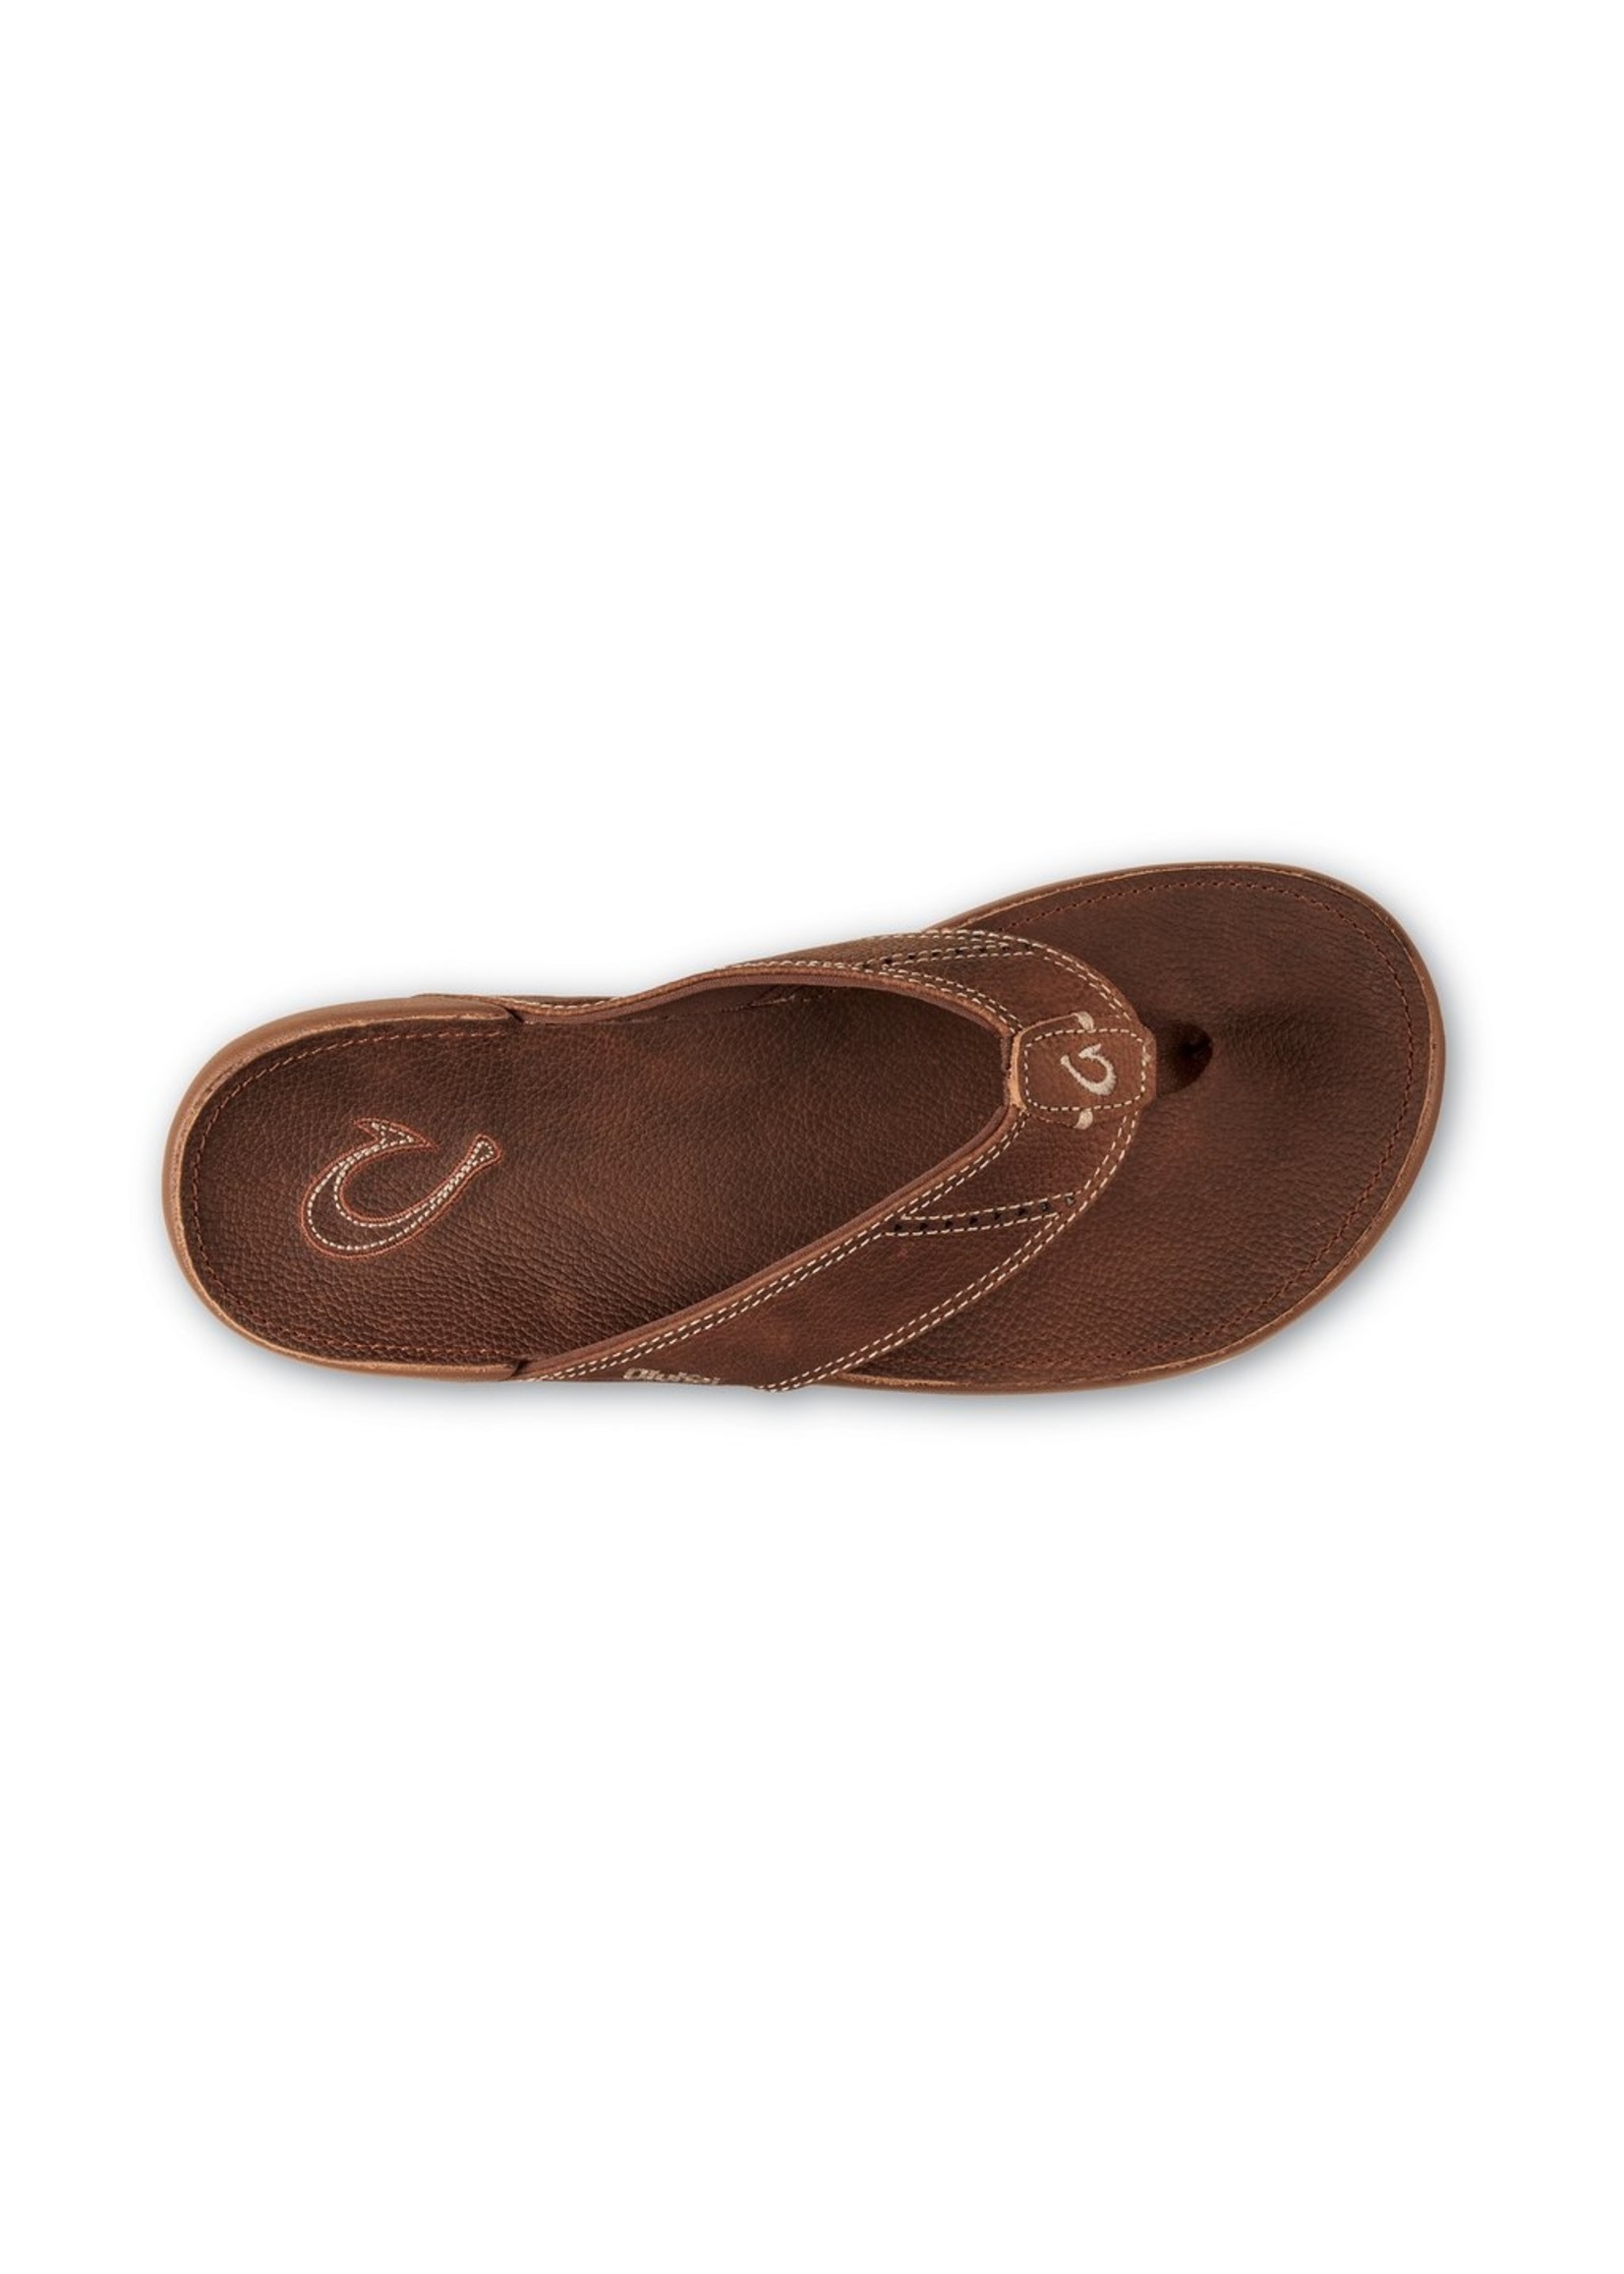 OluKai Nui  Men's Beach Sandals